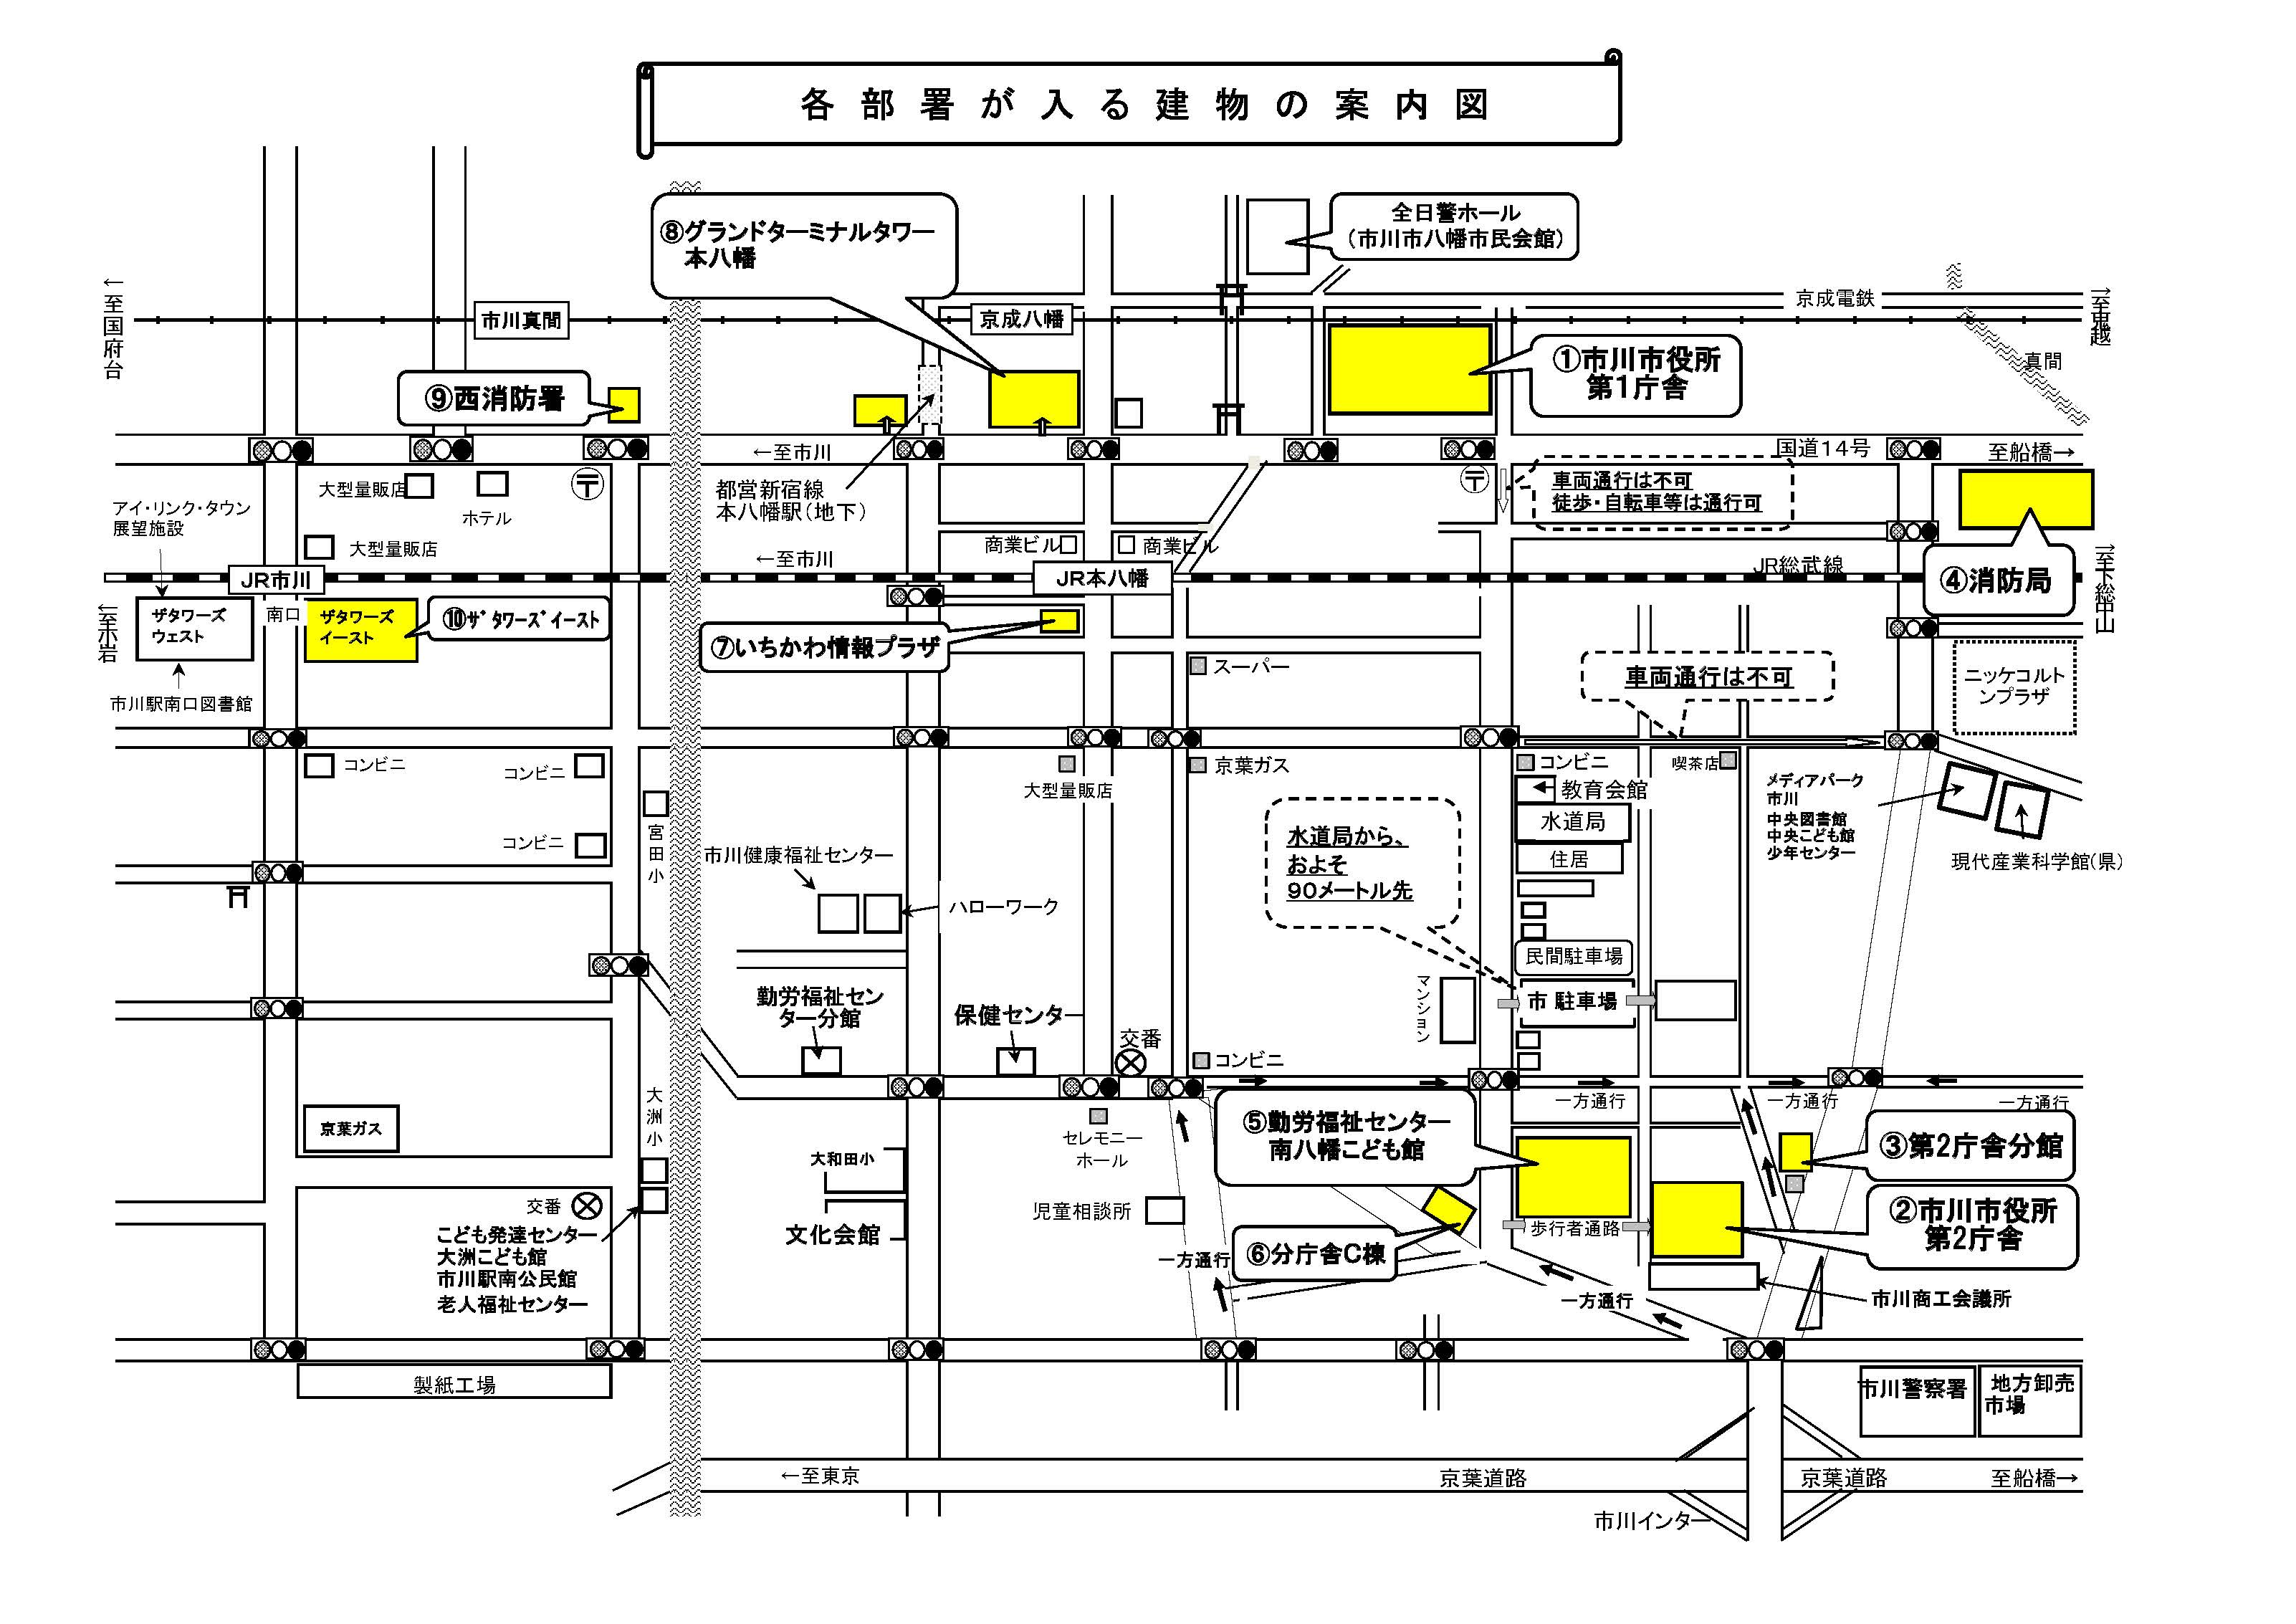 庁舎等、各施設の配置図です。JR本八幡駅の南口を出て、ロータリーの右側の道に沿って歩き、一つ目の角のすぐ手前が情報プラザになります。